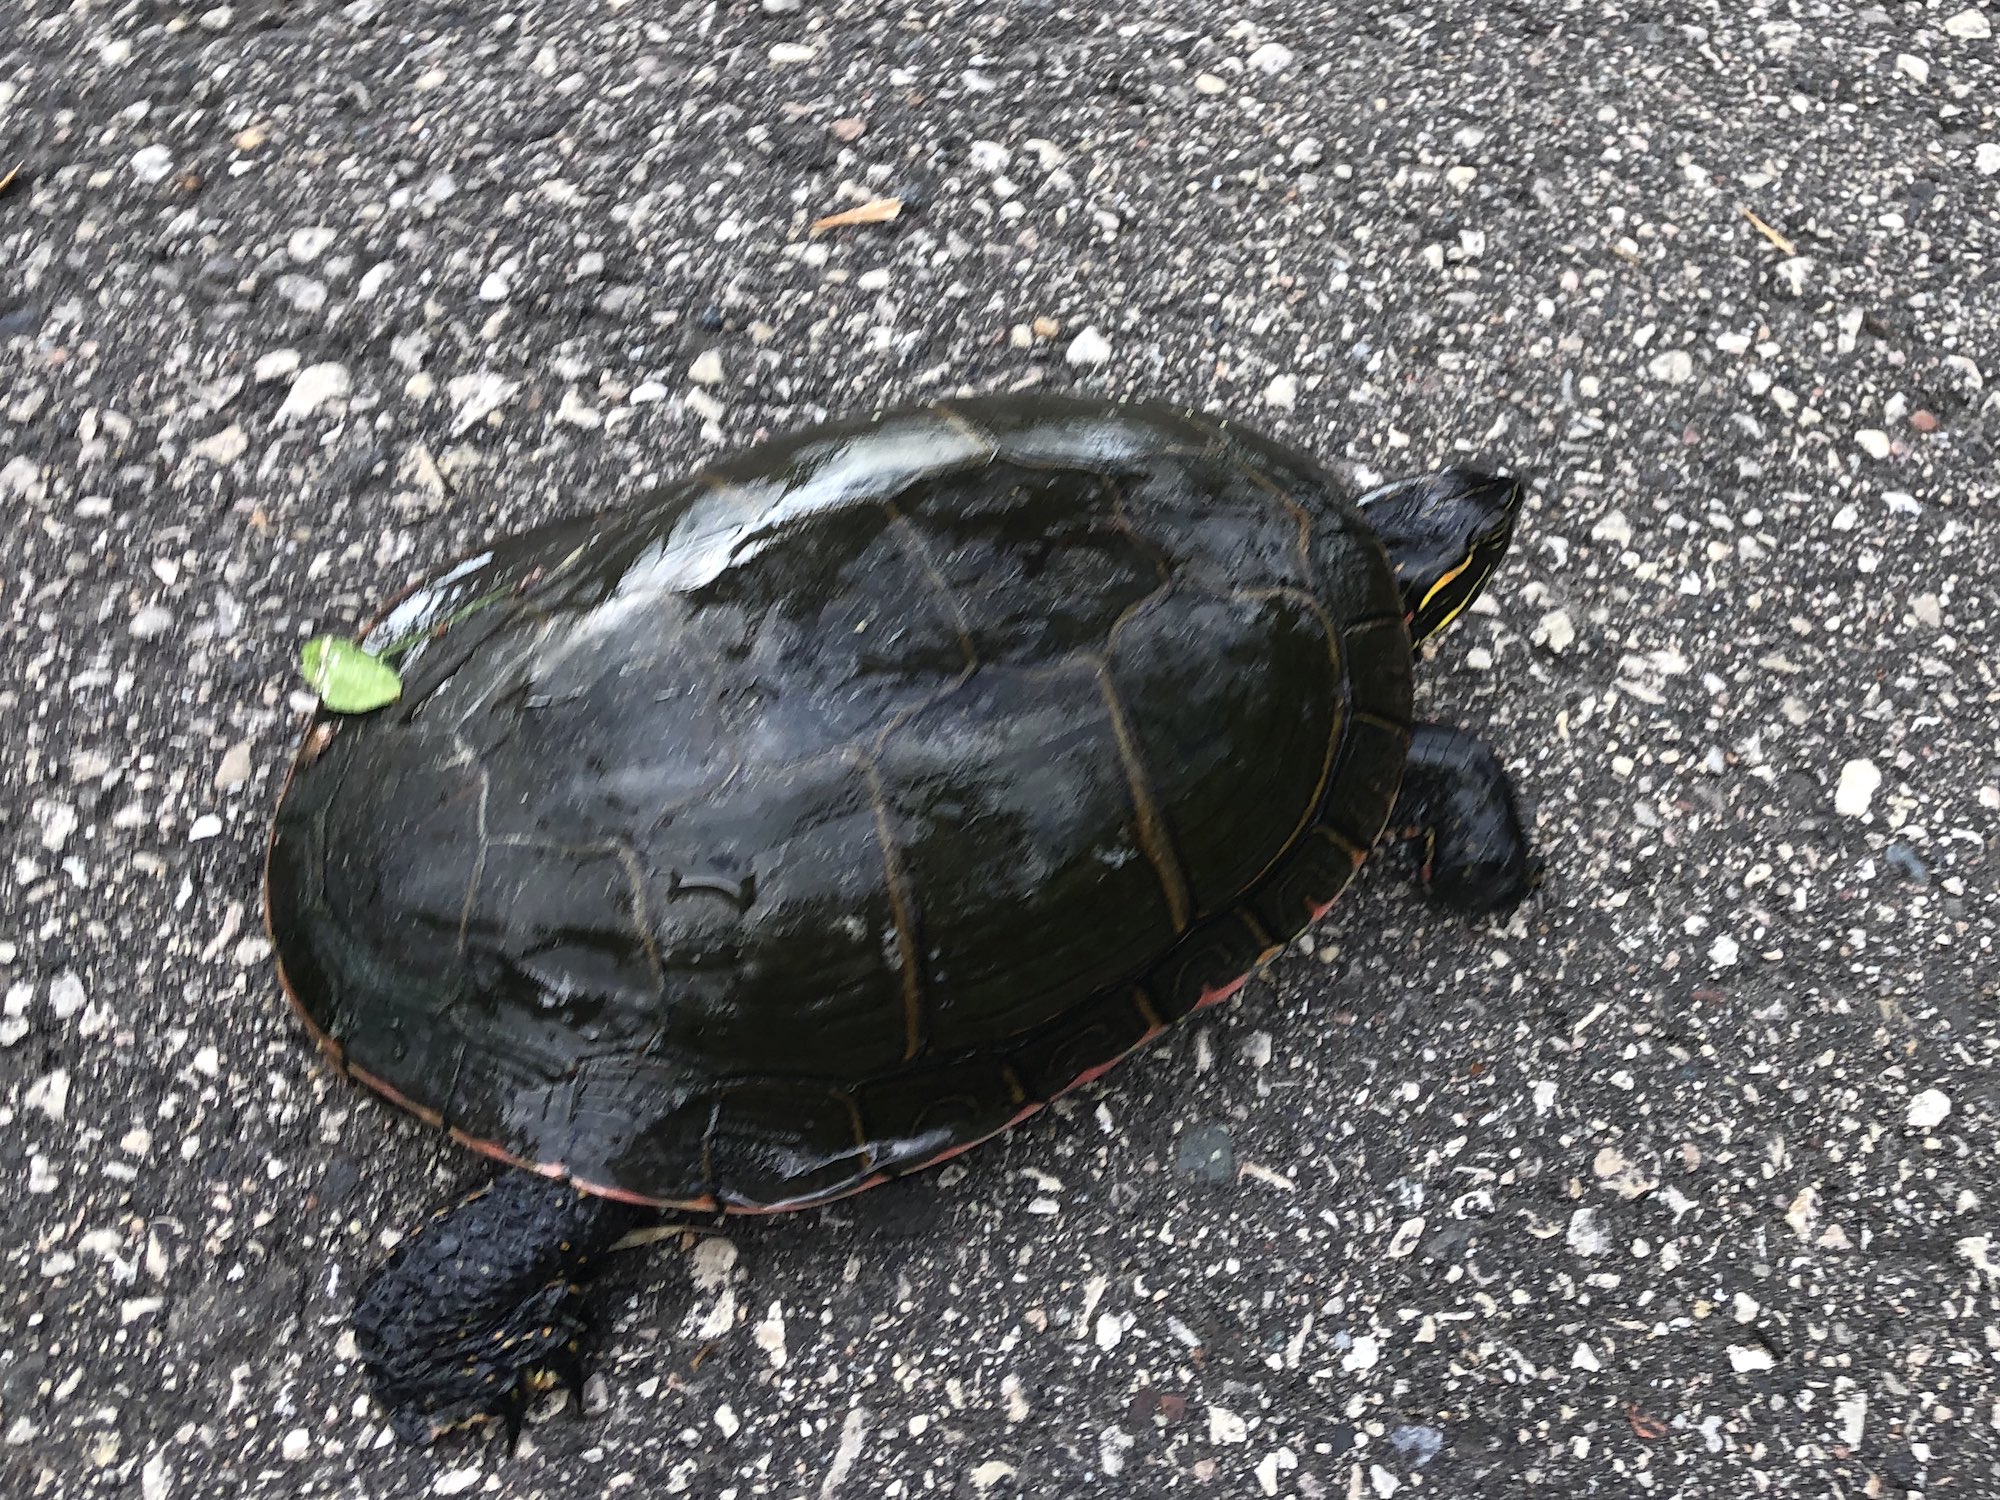 Painted Turtle walking along bike path in Oak Savanna in Madison, Wisconsin on July 2, 2019.